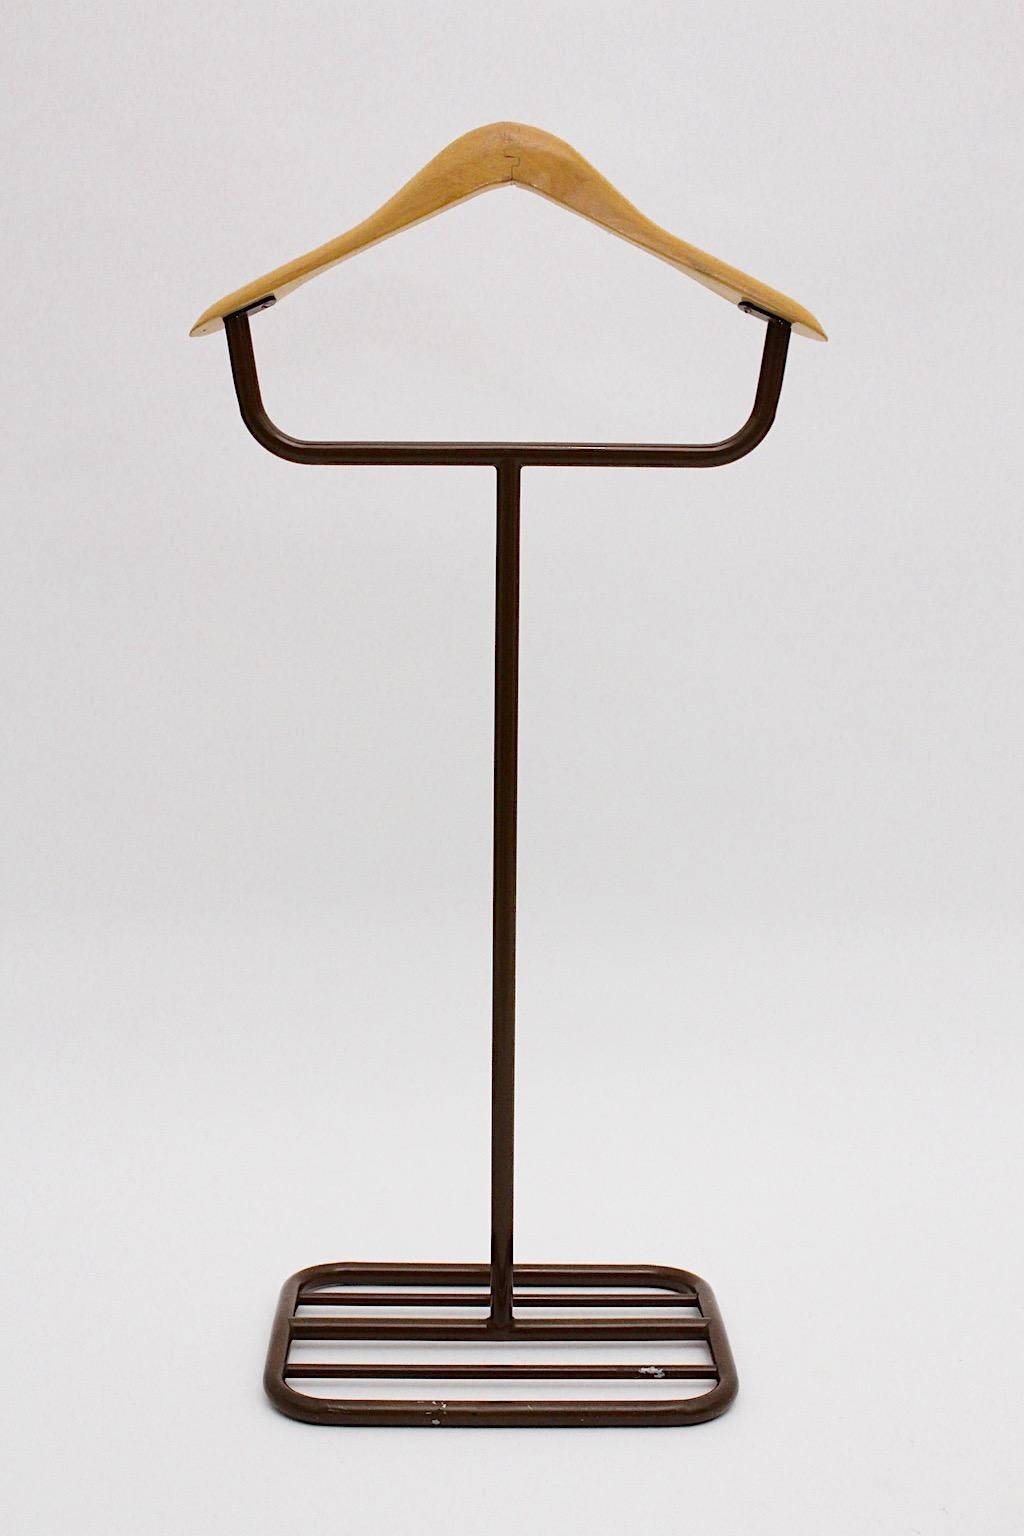 Valet ou porte-manteau Bauhaus marron en métal et hêtre conçu et fabriqué dans les années 1930.
Un magnifique valet avec un cintre en hêtre et une construction en métal laqué brun avec une base carrée.
Par son aspect sobre, le valet est très proche